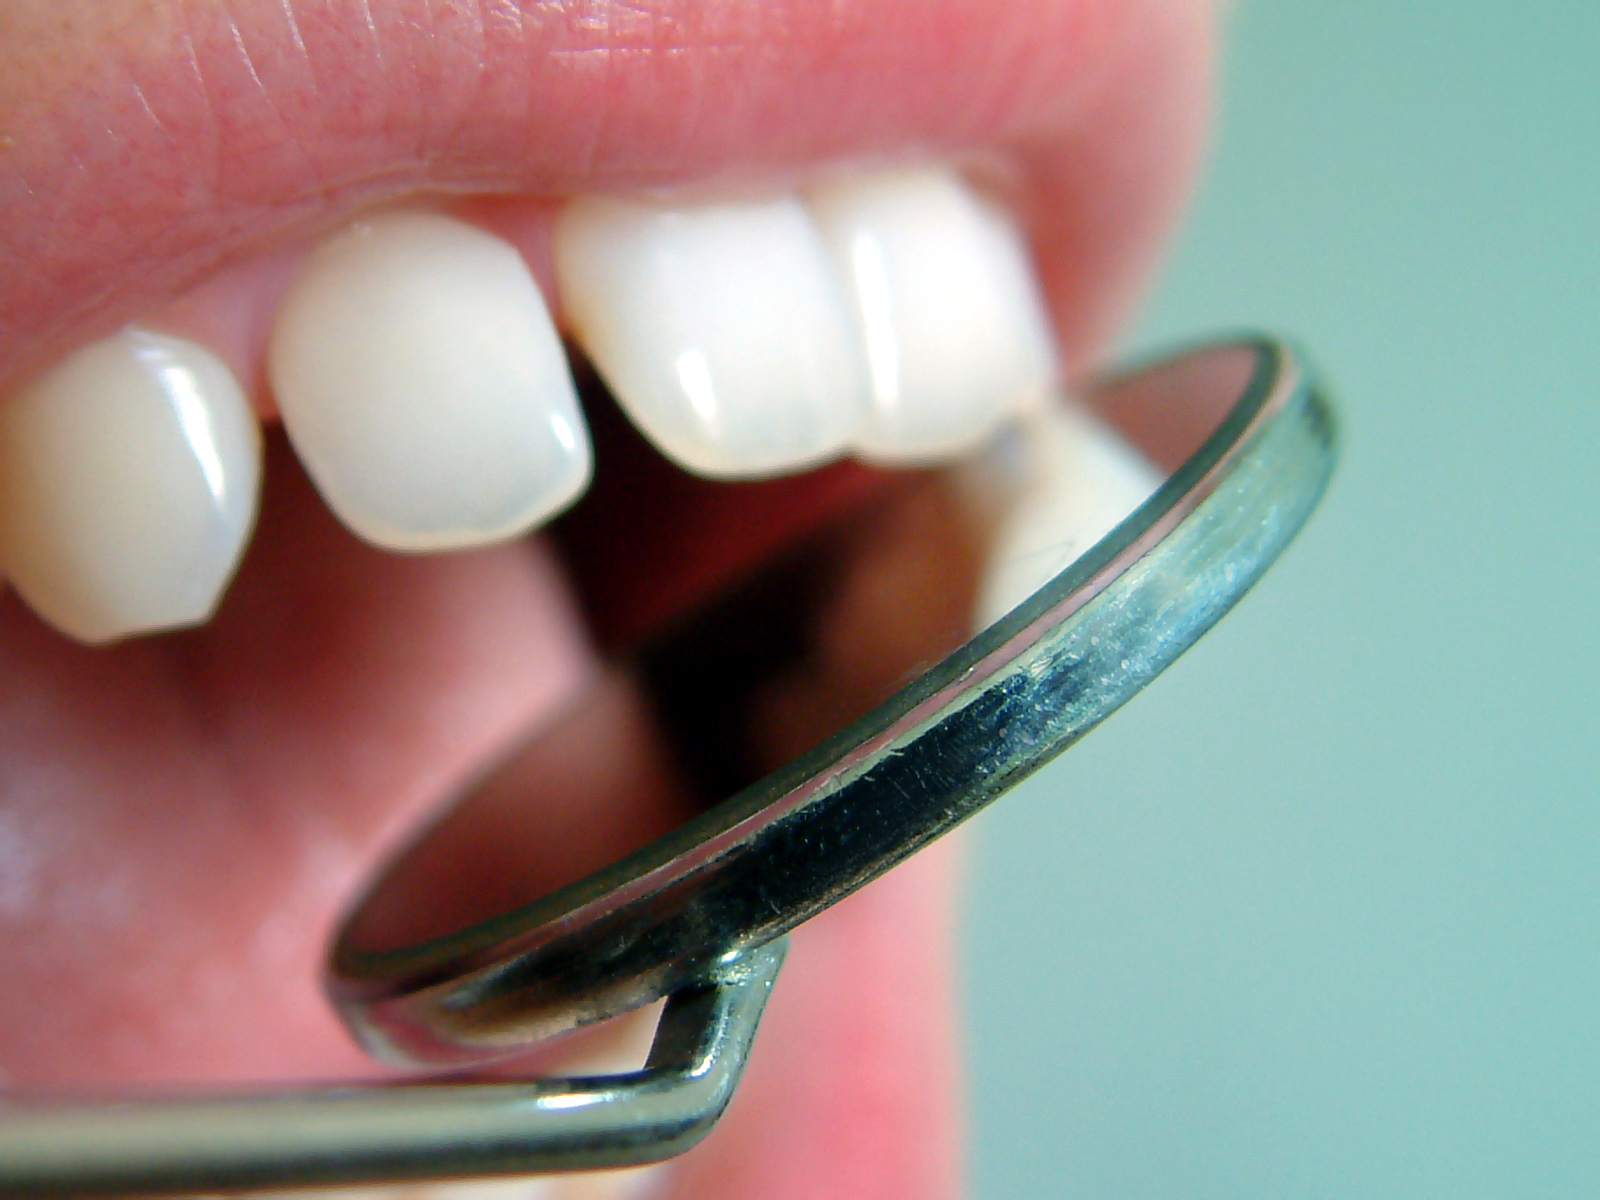 Dental Check Up- more than just teeth.